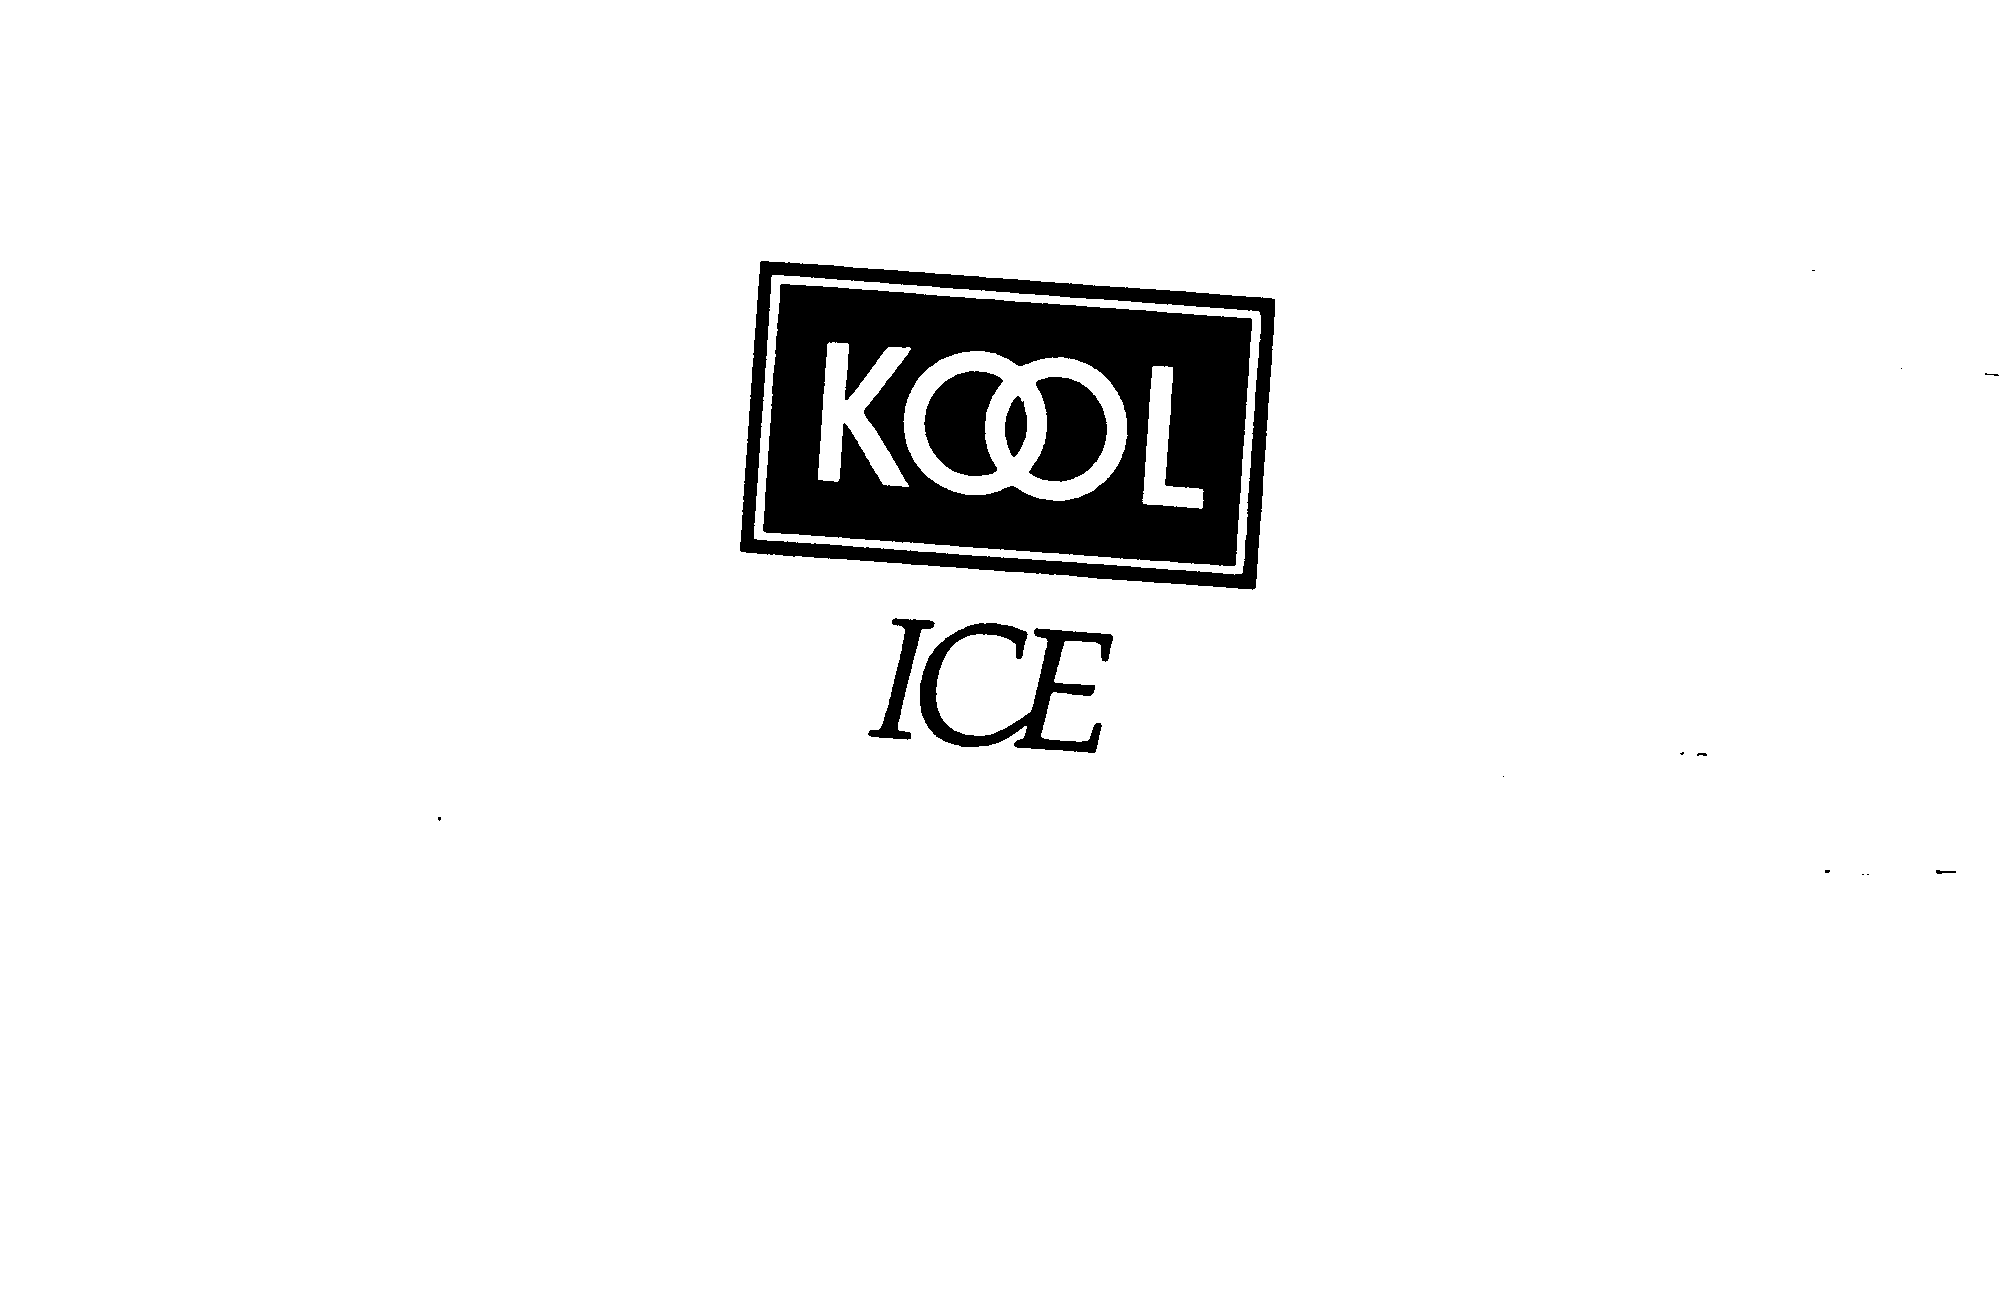  KOOL ICE